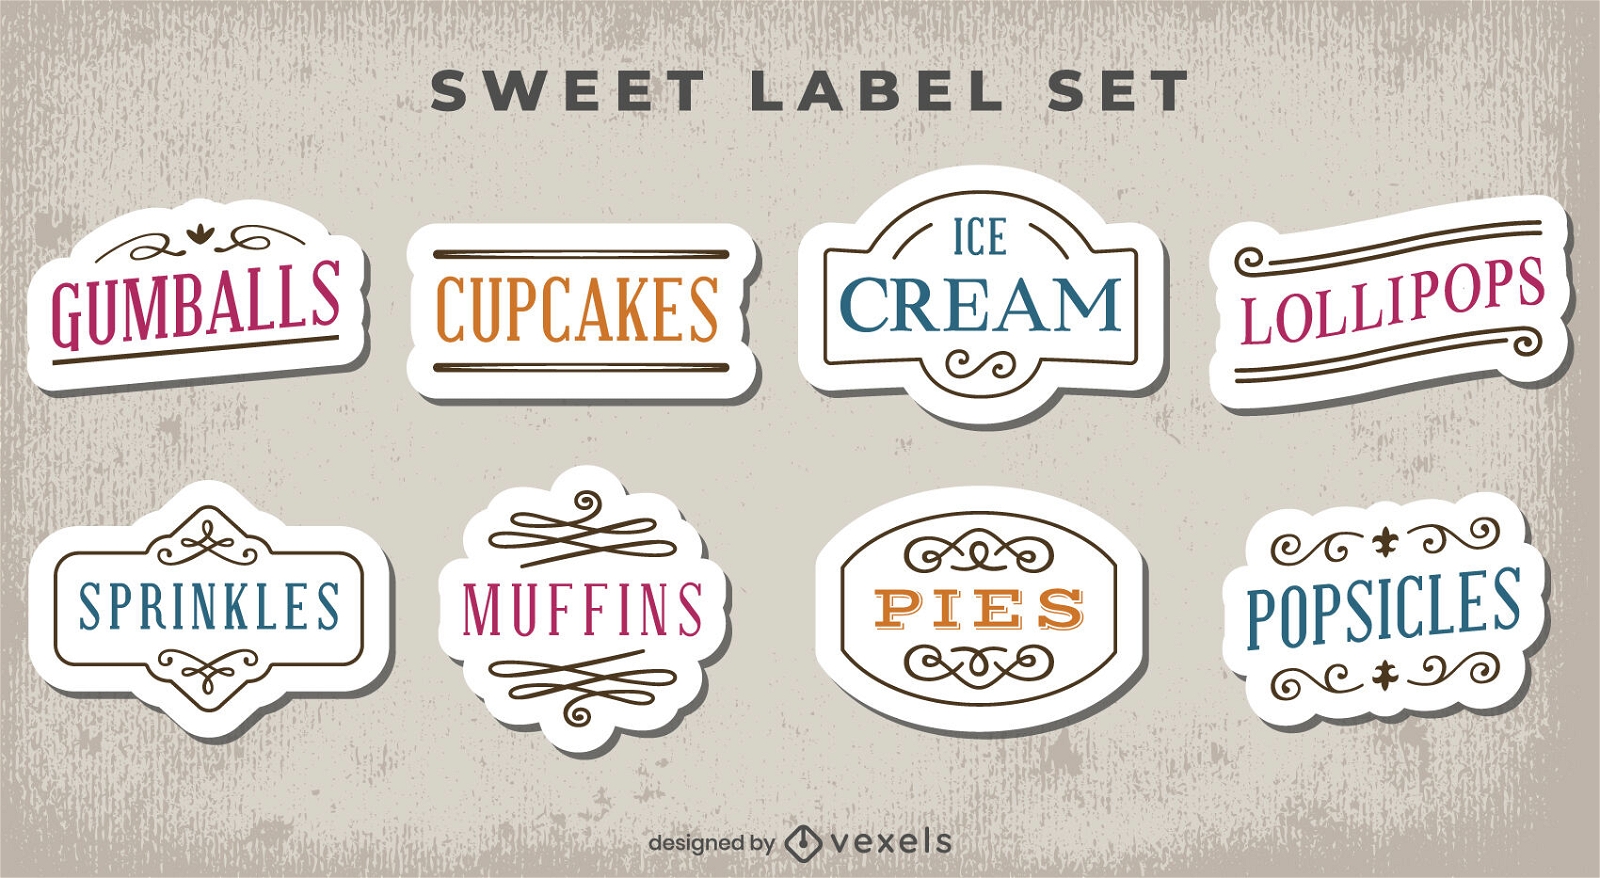 Etikettenset für süße Leckereien